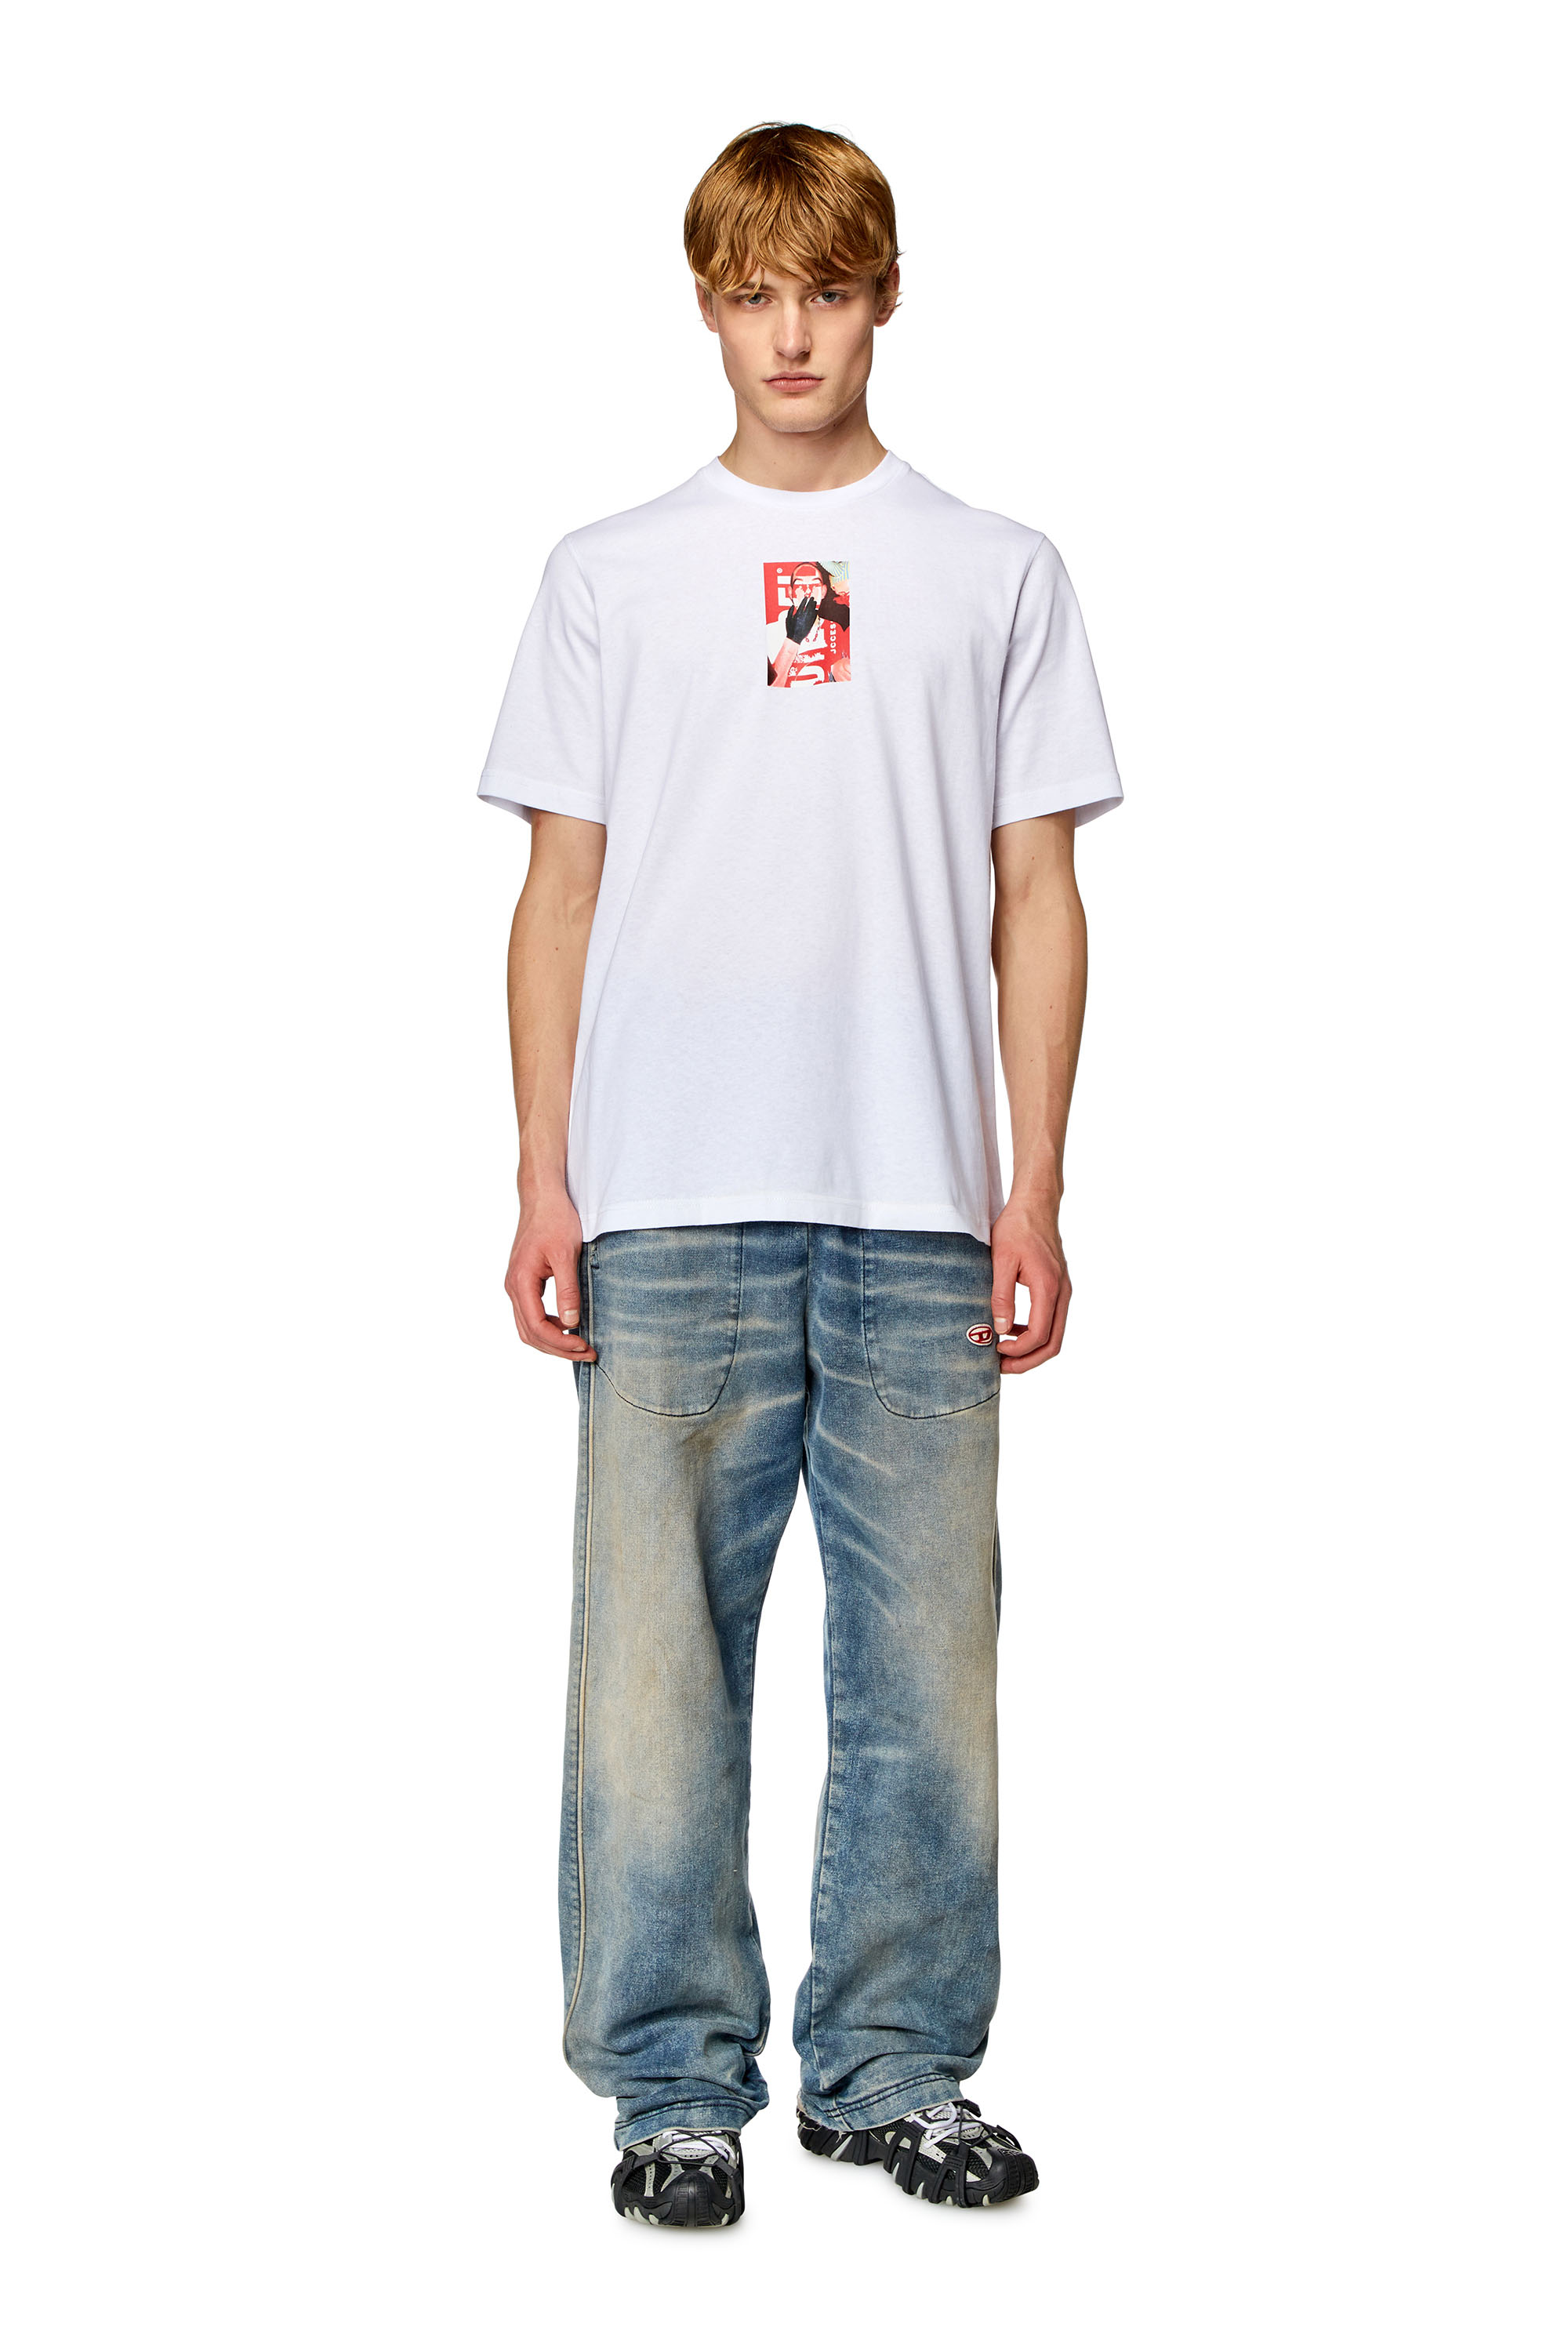 Diesel - T-JUST-N11, Homme T-shirt avec logo imprimé photo in Blanc - Image 3